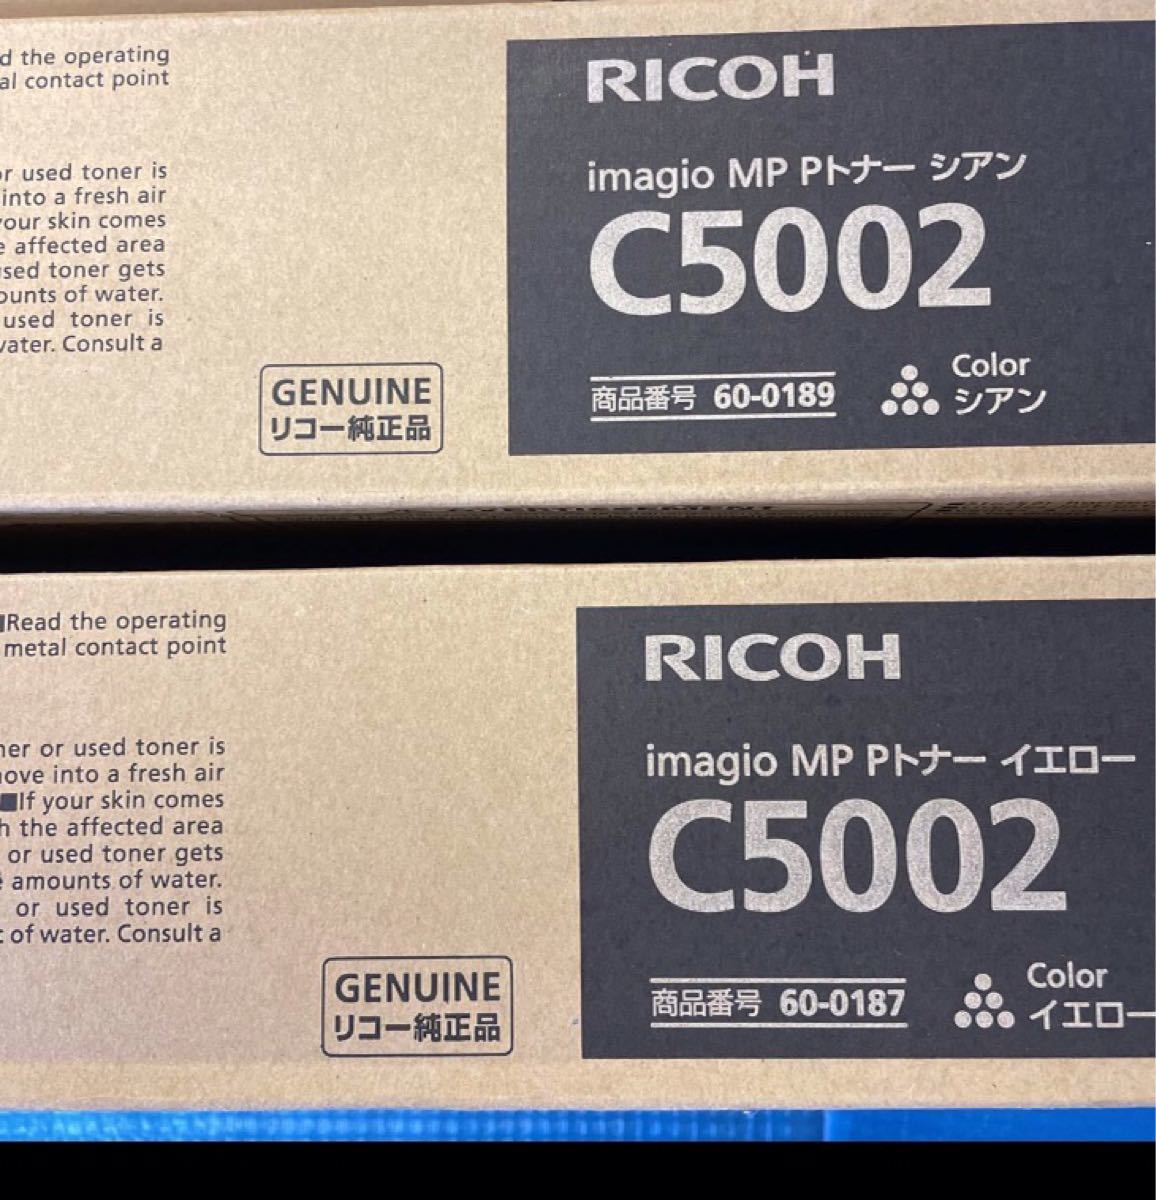 超安い MP imagio リコー RICOH Pトナー 10本 4色 c5002 - トナーカートリッジ - reachahand.org